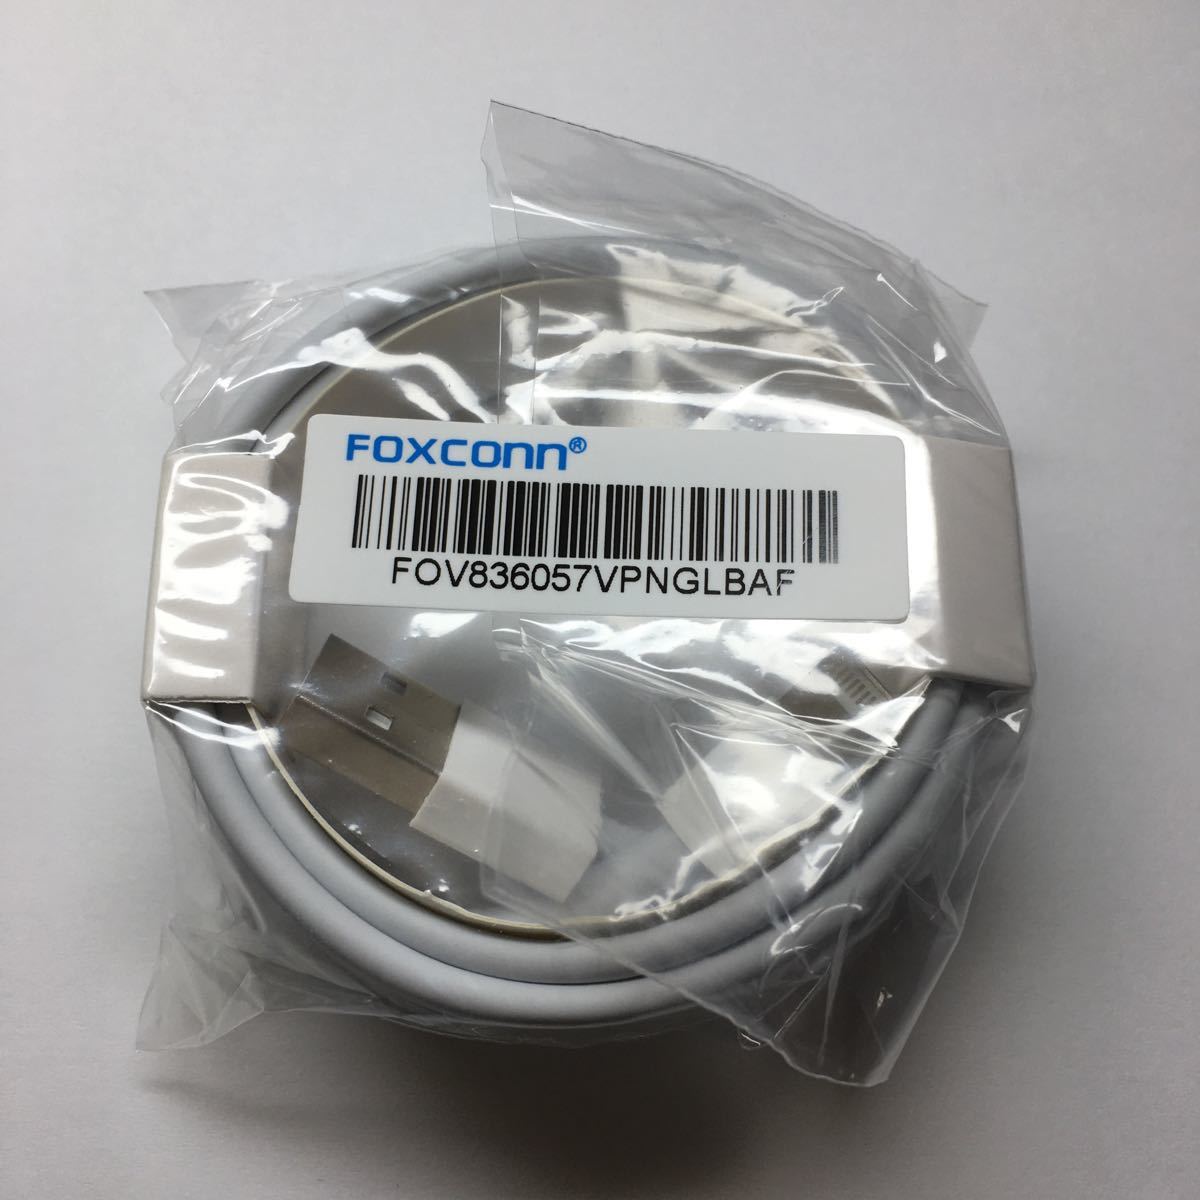 FOXCONN社製 ライトニングケーブル iPhone 充電・同期ケーブル純正品